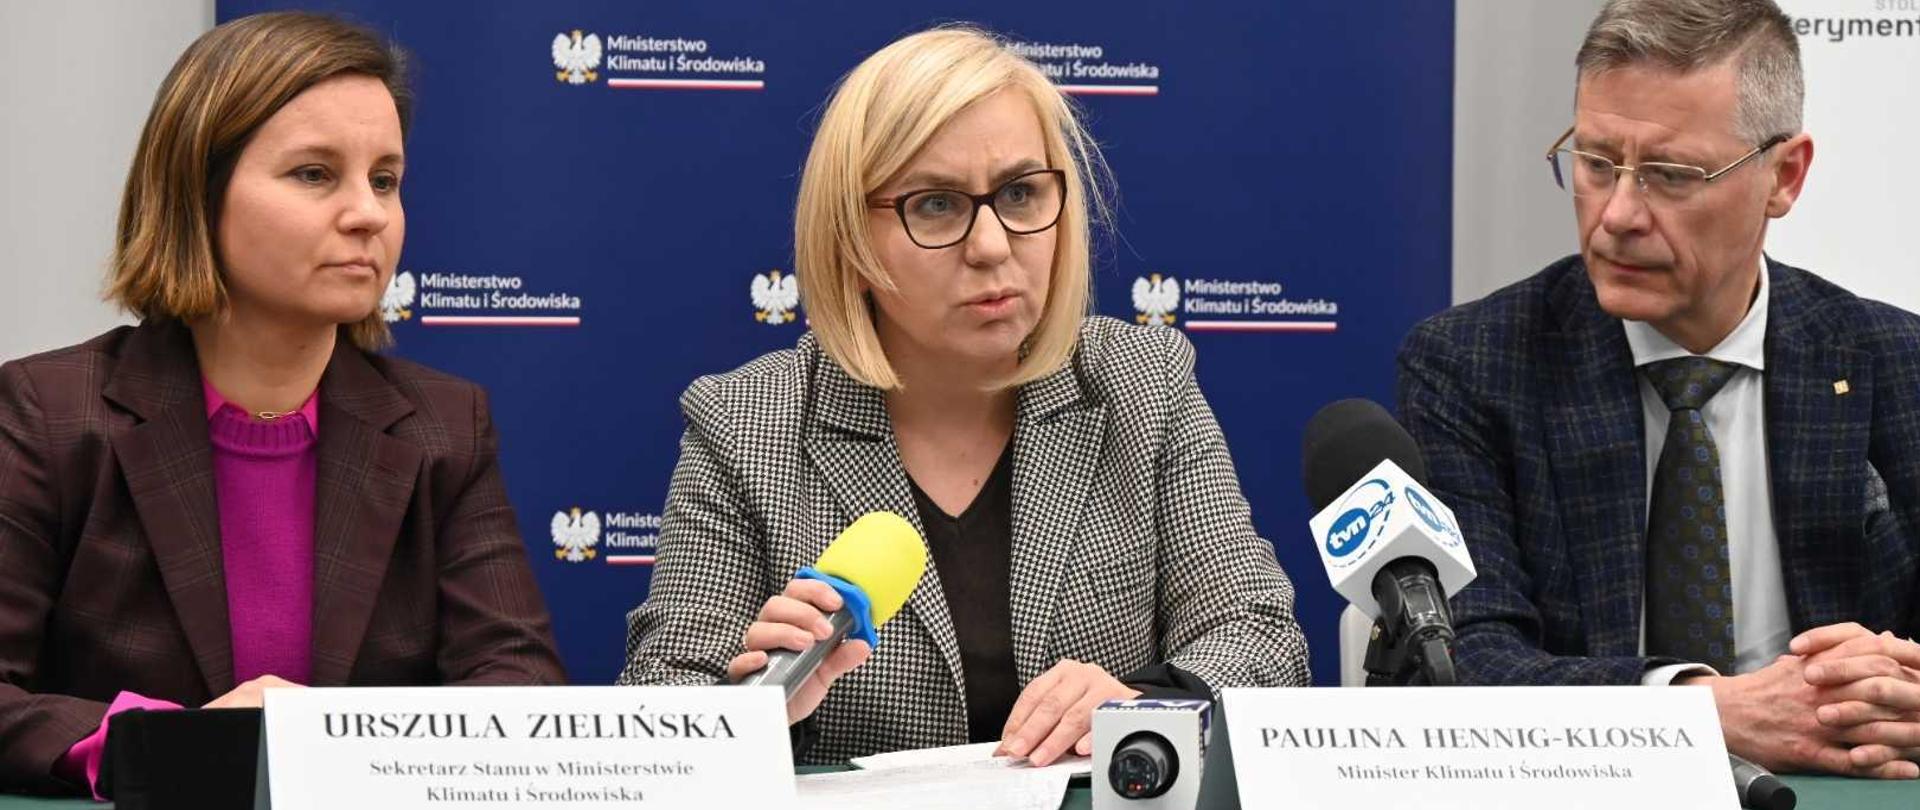 Minister klimatu i środowiska Paulina Hennig-Kloska oraz wiceministra Urszula Zielińska